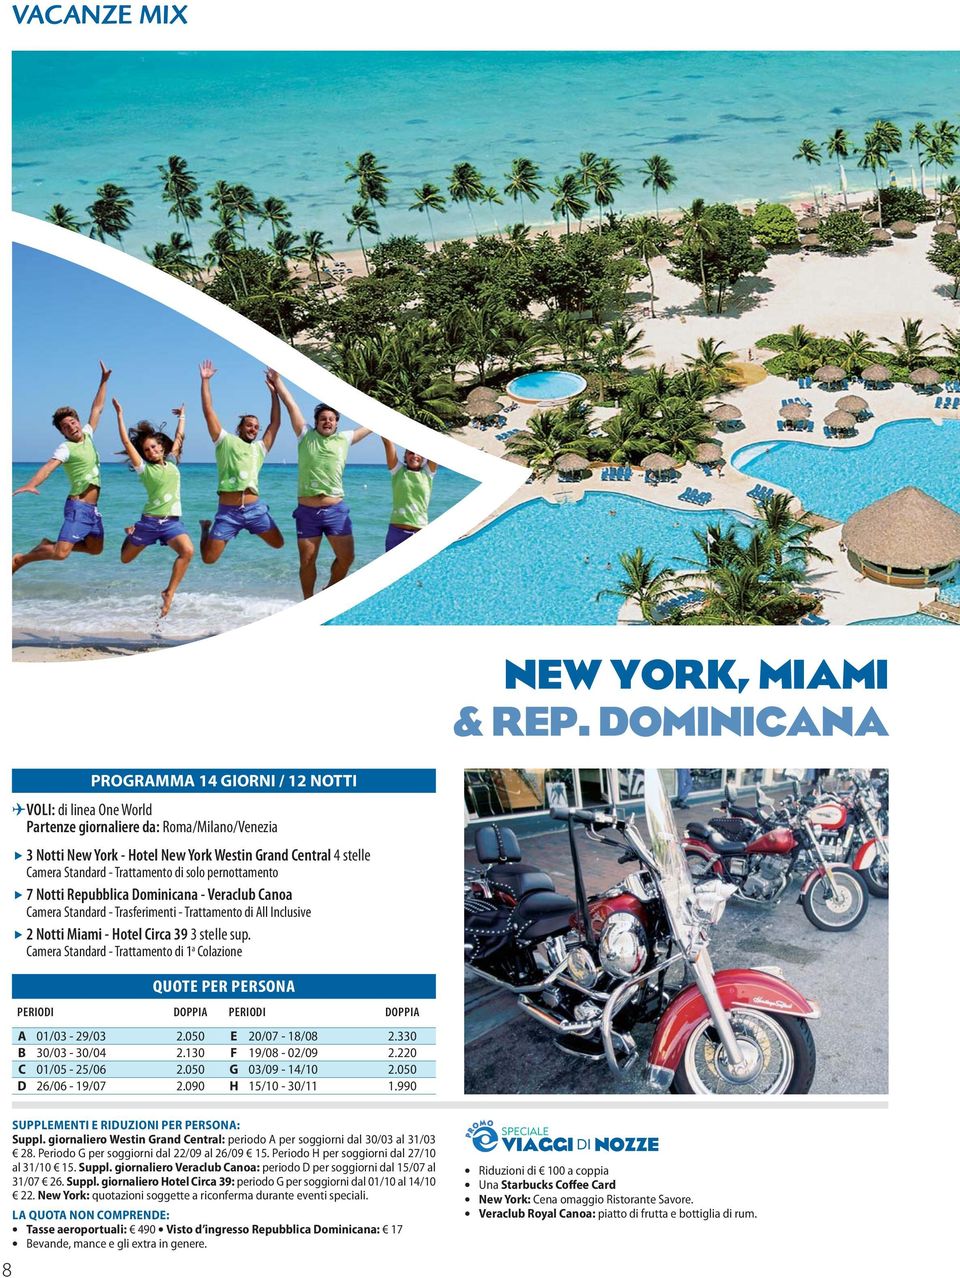 Dominicana - Veraclub Canoa Camera Standard - Trasferimenti - Trattamento di All Inclusive 2 Notti Miami - Hotel Circa 39 3 stelle sup. Camera Standard - Trattamento di 1 a Colazione A 01/03-29/03 2.